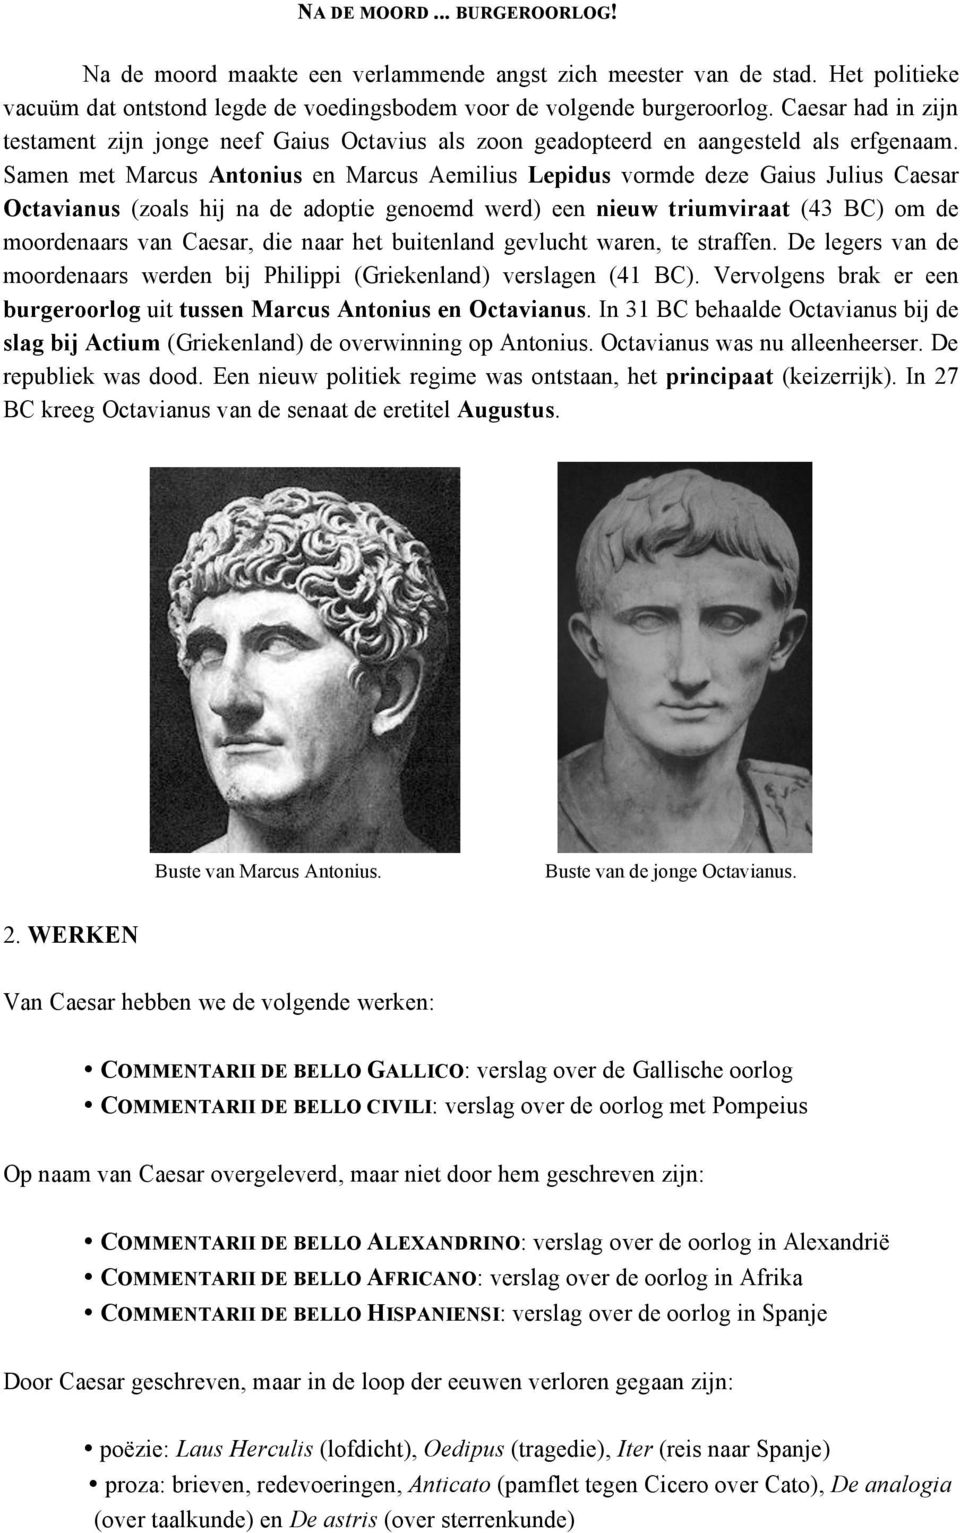 Samen met Marcus Antonius en Marcus Aemilius Lepidus vormde deze Gaius Julius Caesar Octavianus (zoals hij na de adoptie genoemd werd) een nieuw triumviraat (43 BC) om de moordenaars van Caesar, die